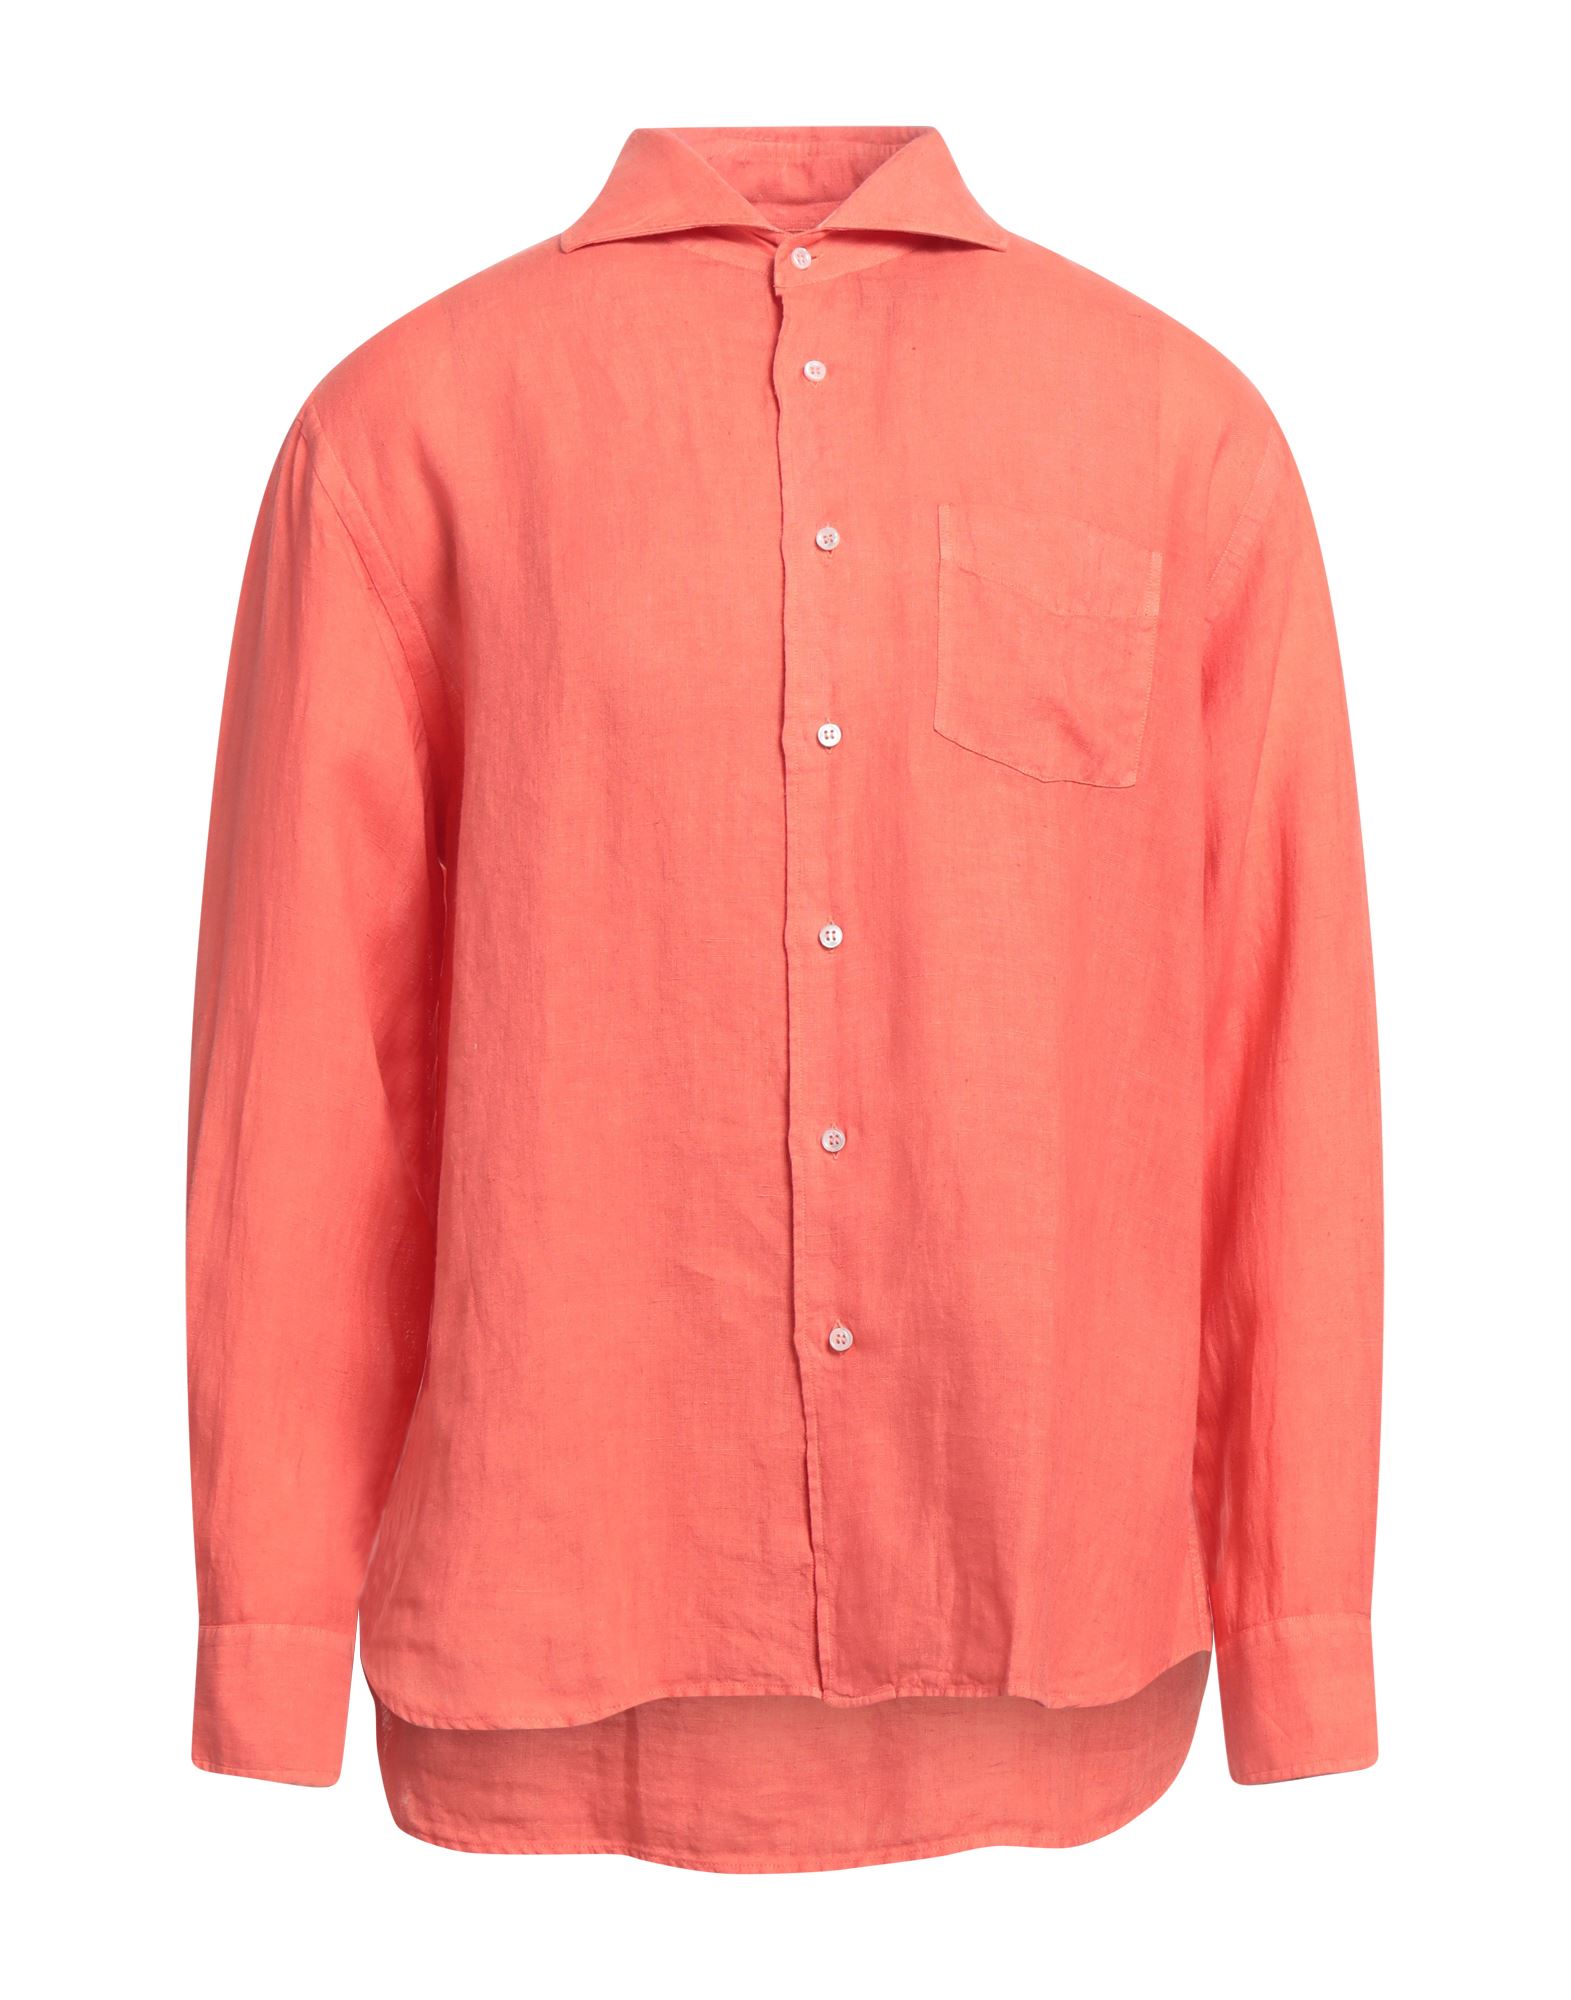 Fedeli Shirts In Orange